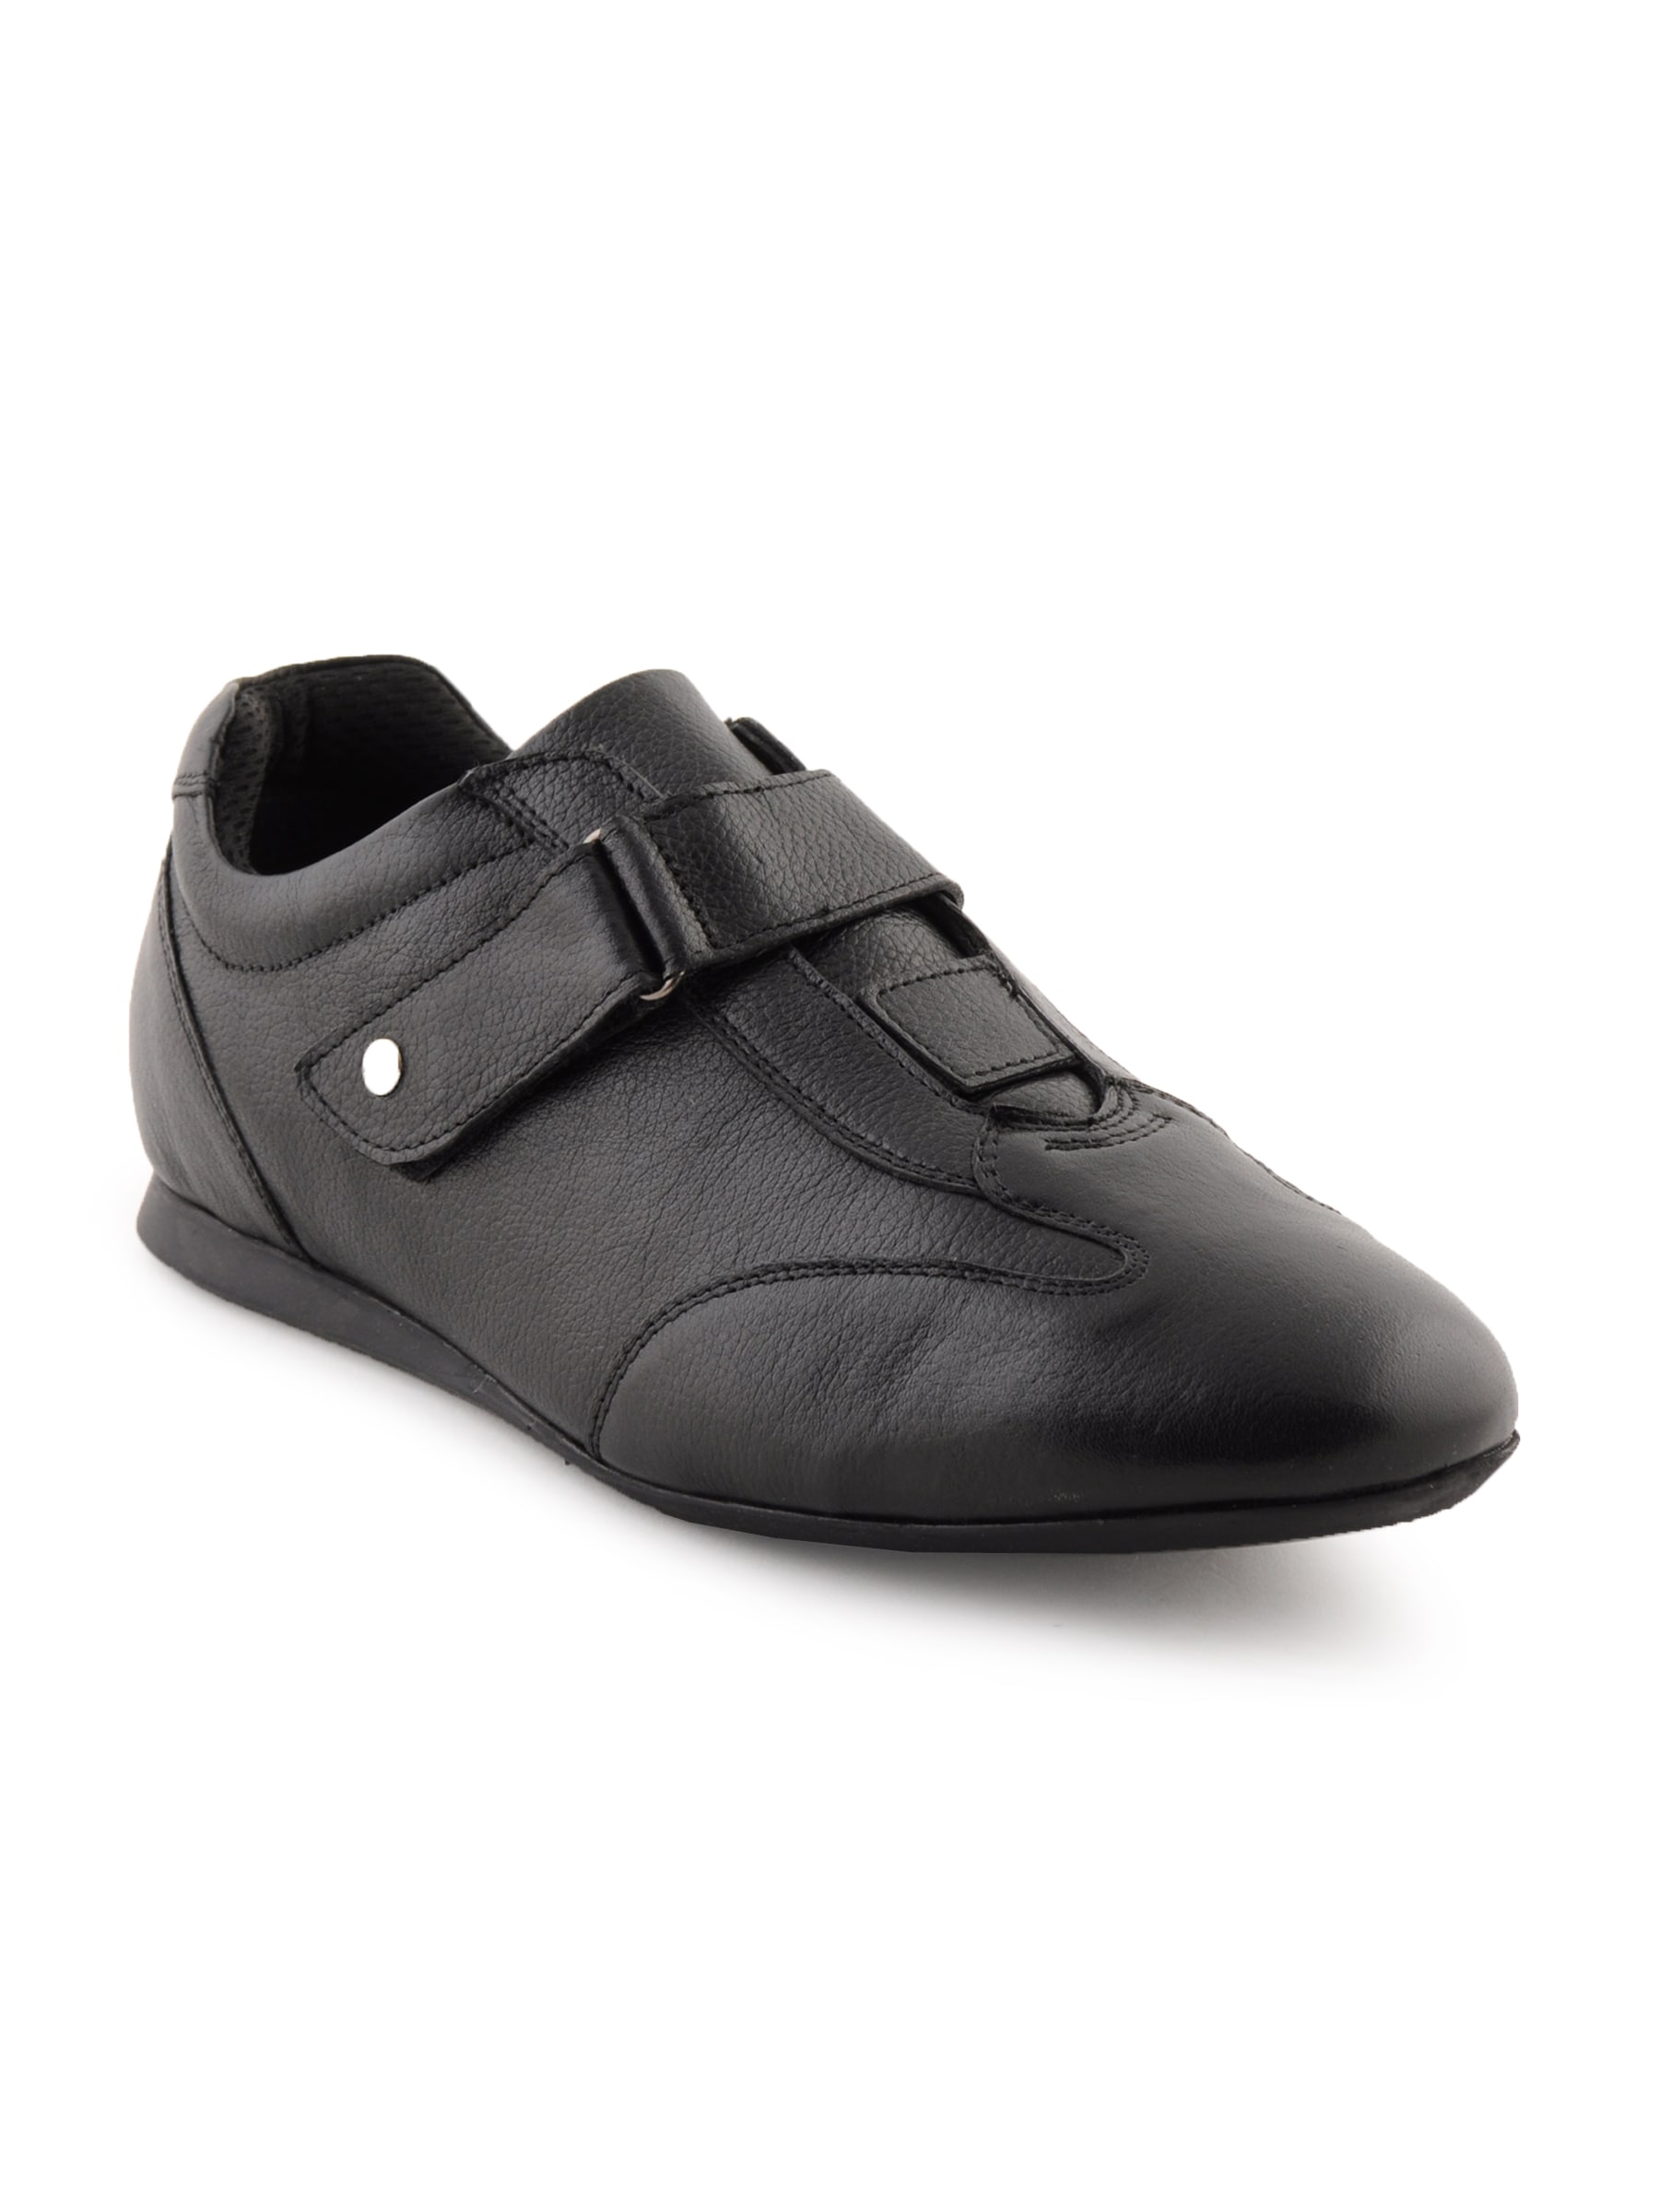 Enroute Men Leather Black Casual Shoes